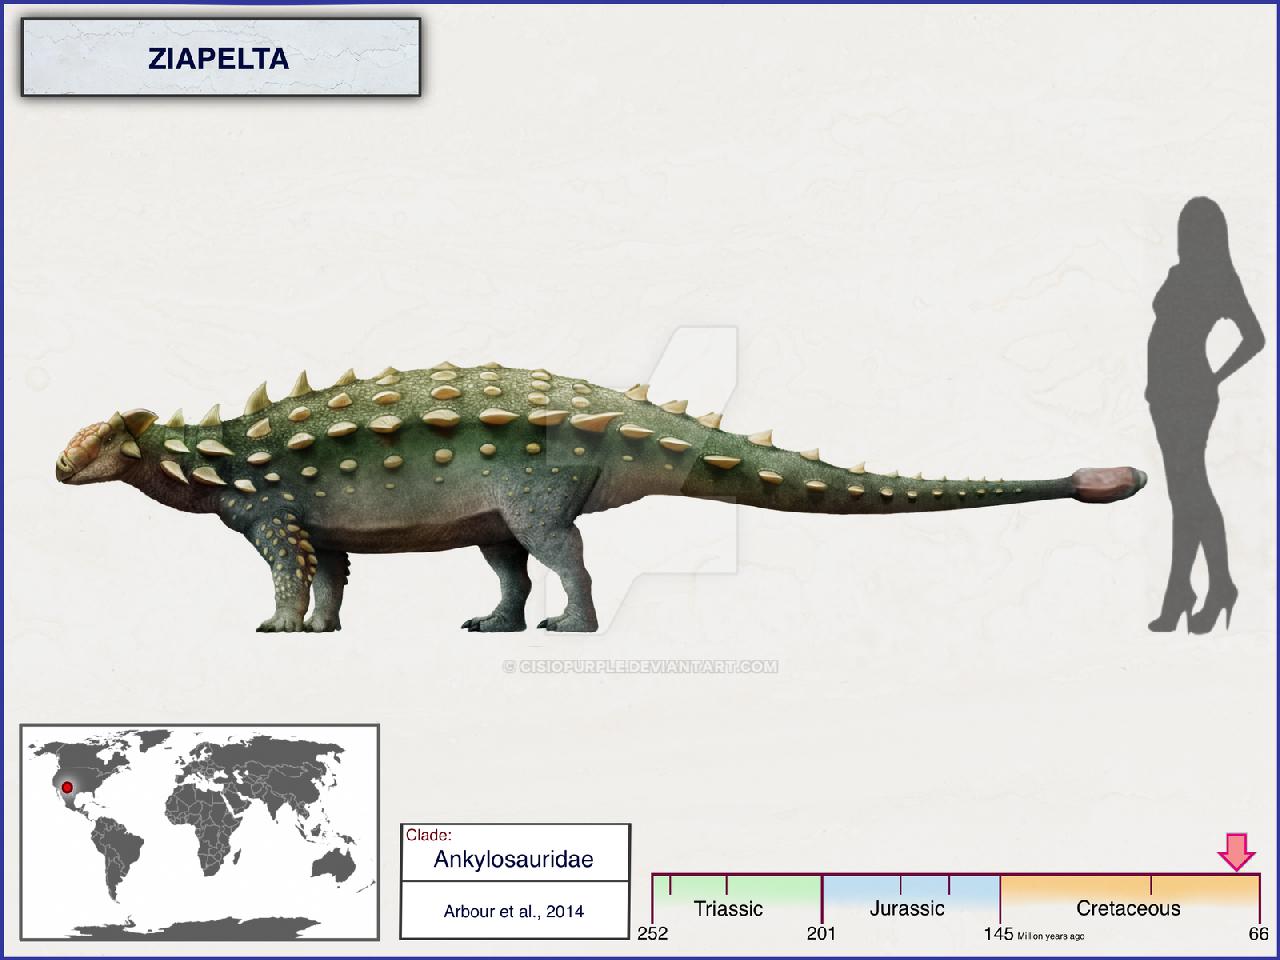 Ziapelta, Cretaceous
(Меловой период)